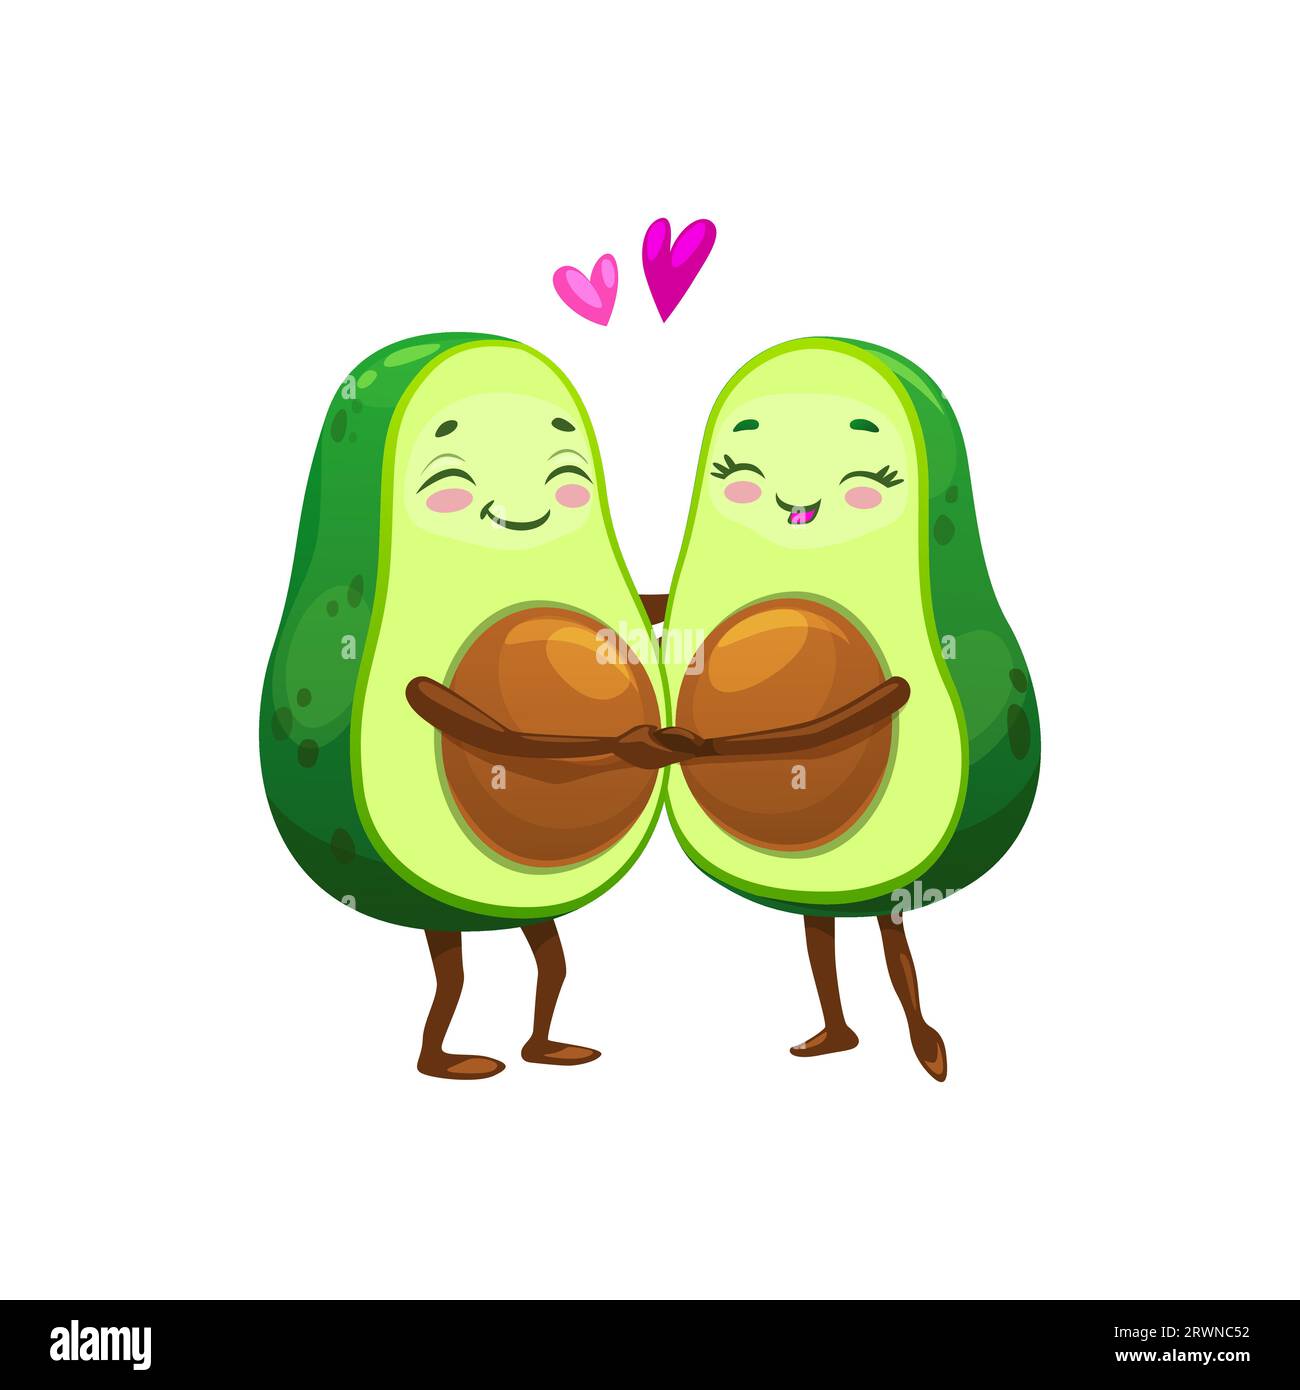 Comic mexikanische Avocado Charakter Paar in Liebe zu Herzen, Vektor Emoji oder Kawaii Emoticon. Fröhliche Avocado-Paare oder Freunde, die sich mit Herzen an den Händen halten, fröhliche Avocado-Food-Persönlichkeiten für Kinder Stock Vektor